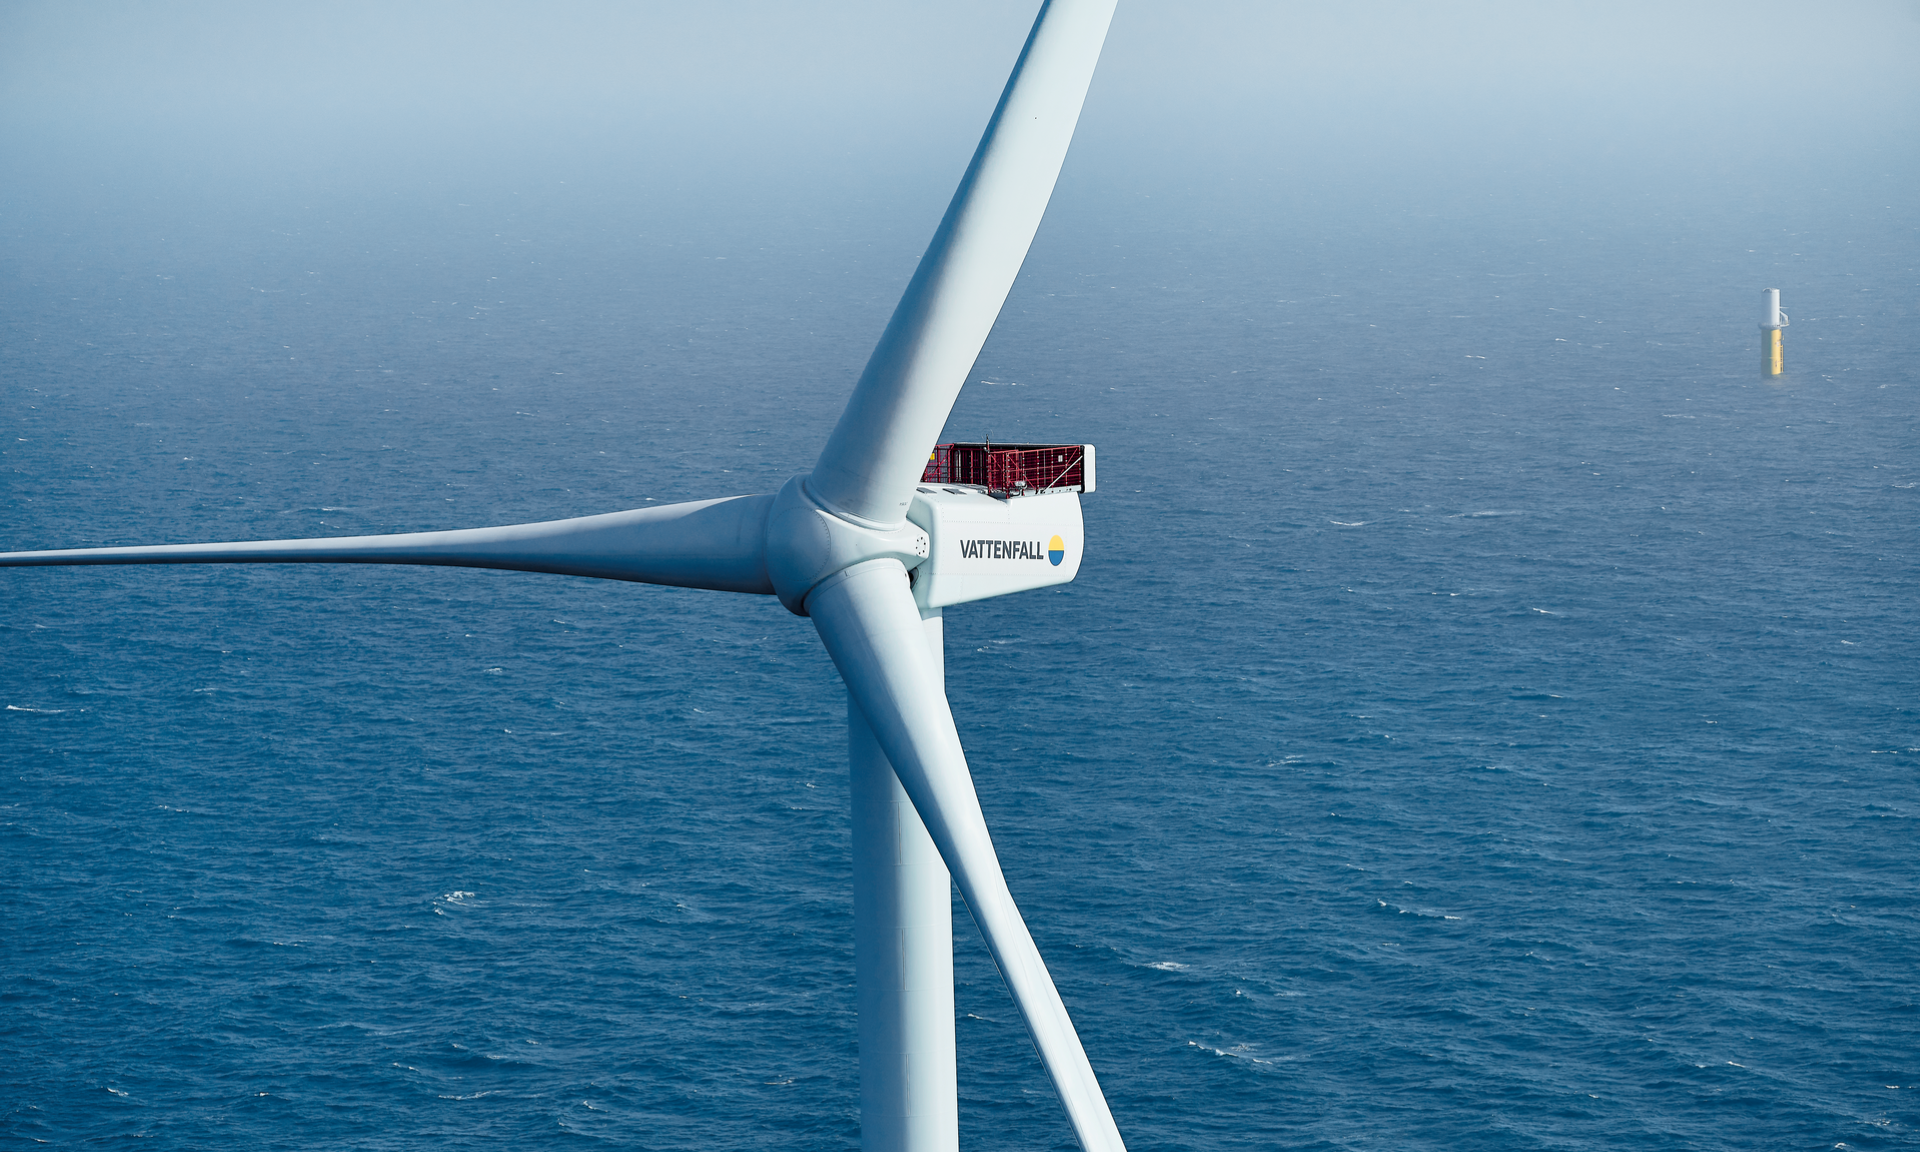 Horns Rev 3 offshore wind farm in Denmark